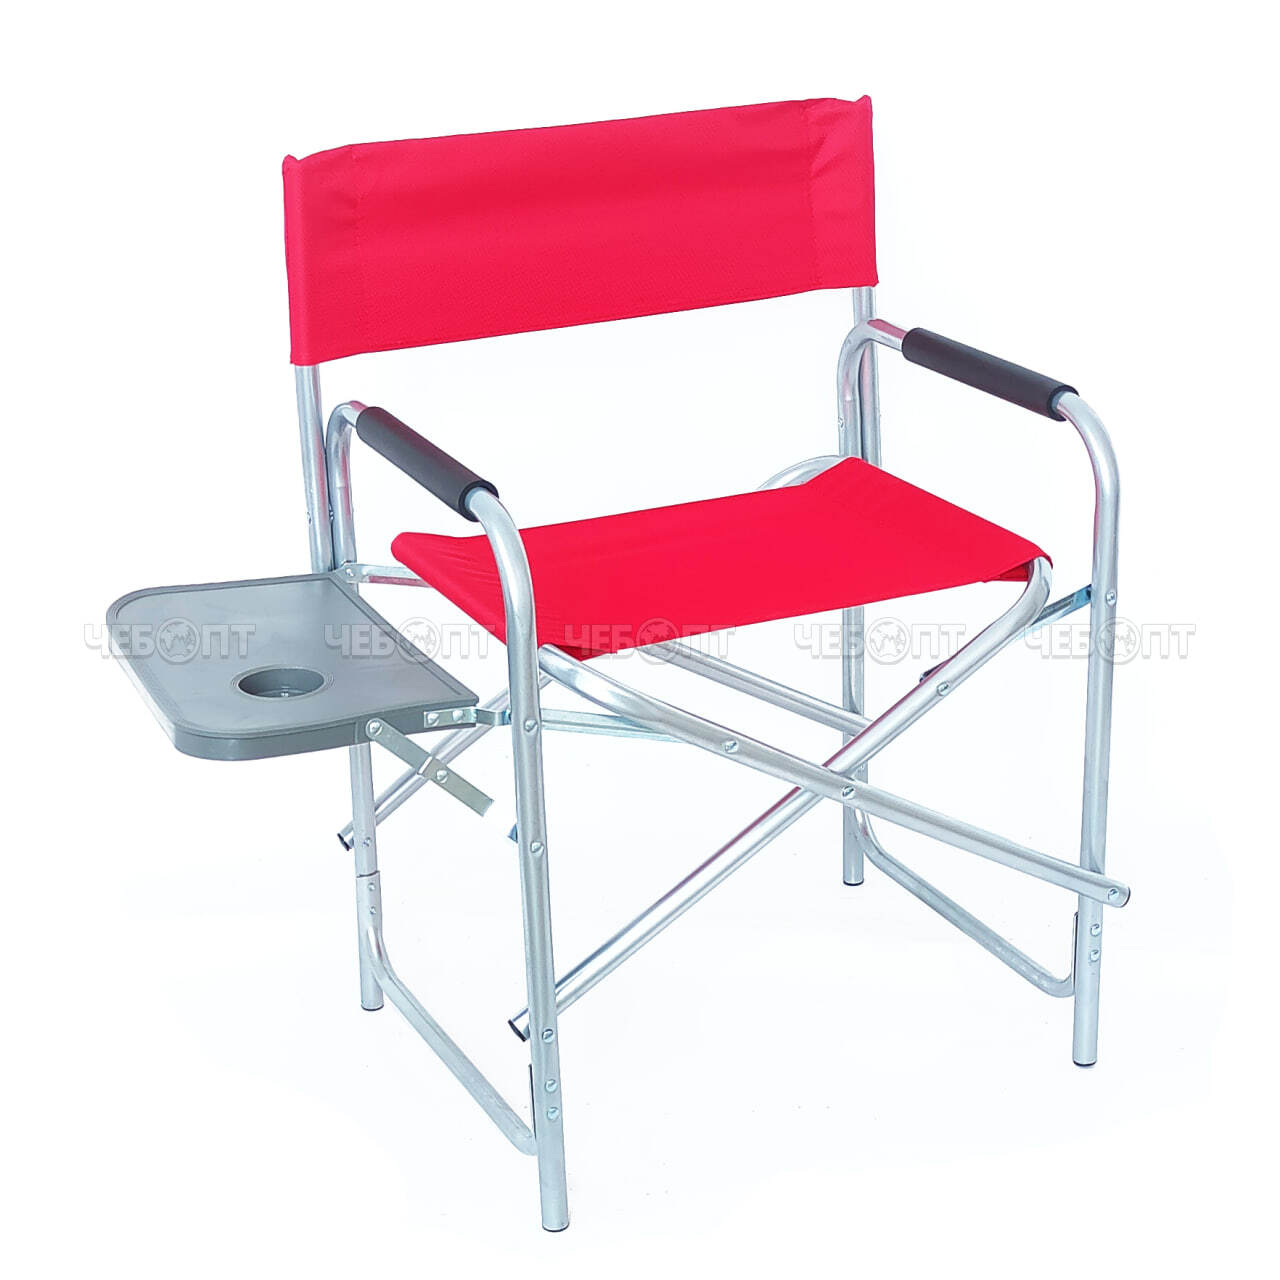 Кресло - складное туристическое С ПОЛКОЙ 440*540*780 мм, ткань оксфорд, цвета в ассортименте арт. XY-8025, 290024 $ [6] GOODSEE. ЧЕБОПТ.